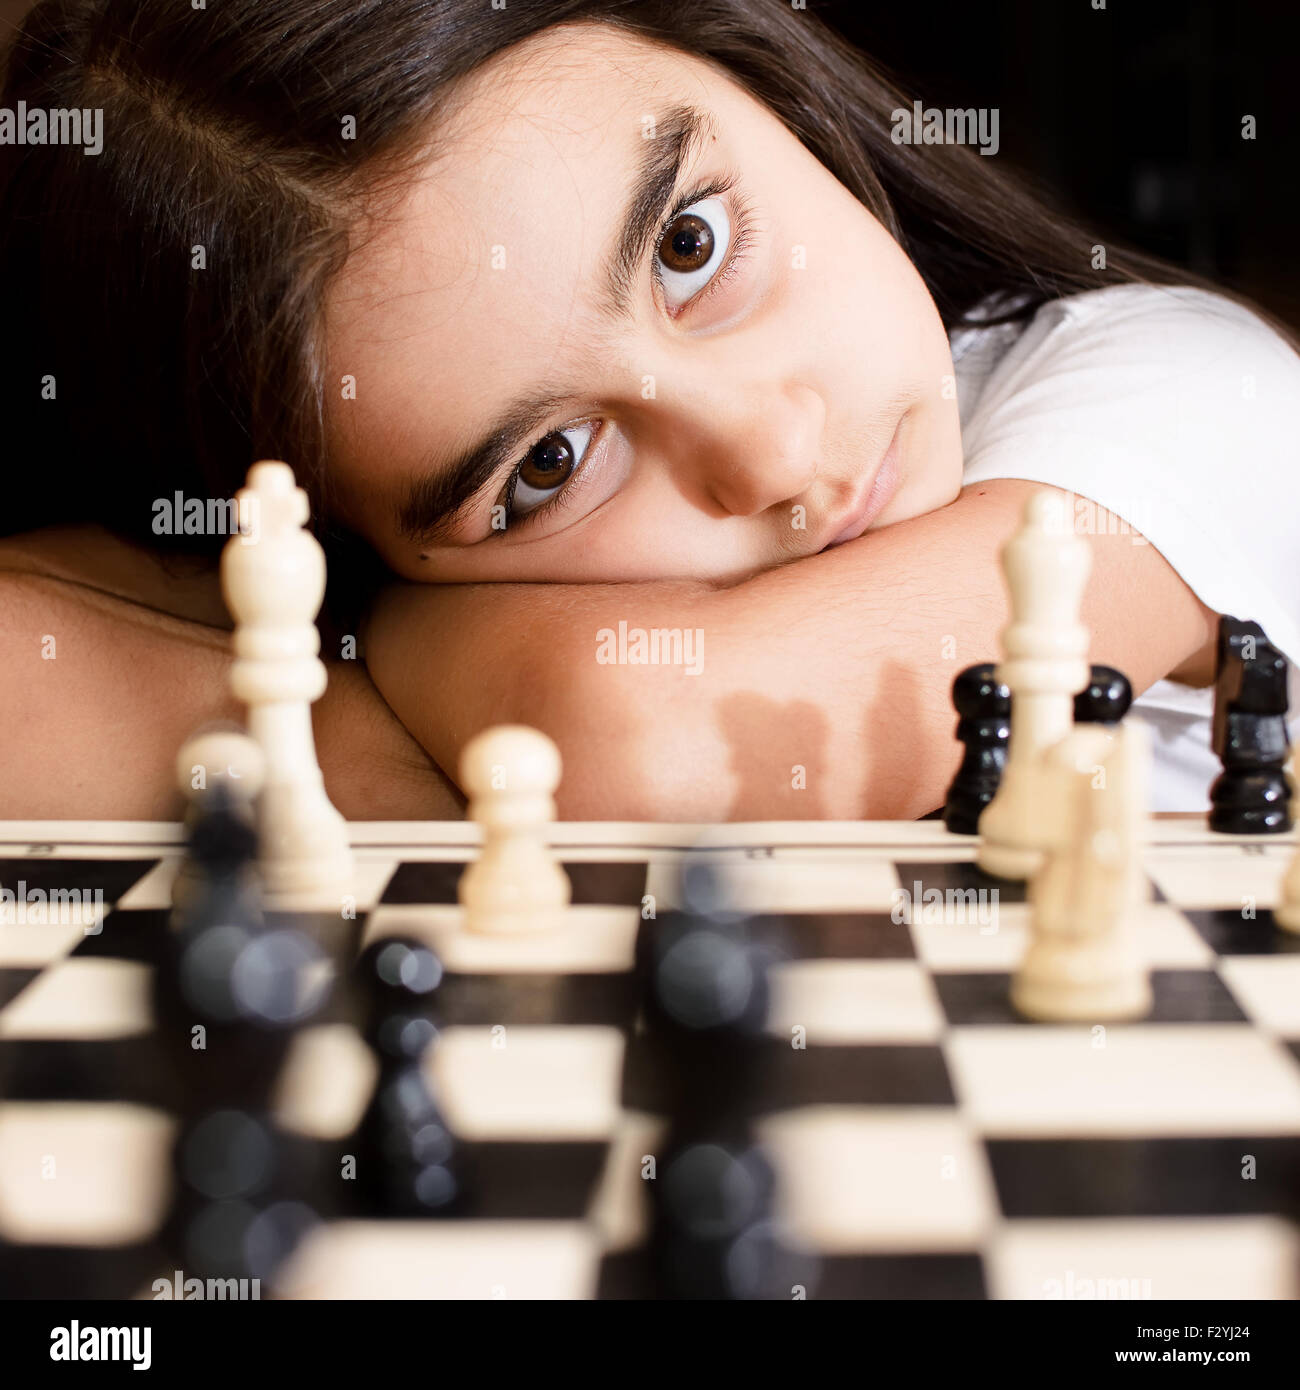 Belle petite fille jouant aux échecs concentré Banque D'Images